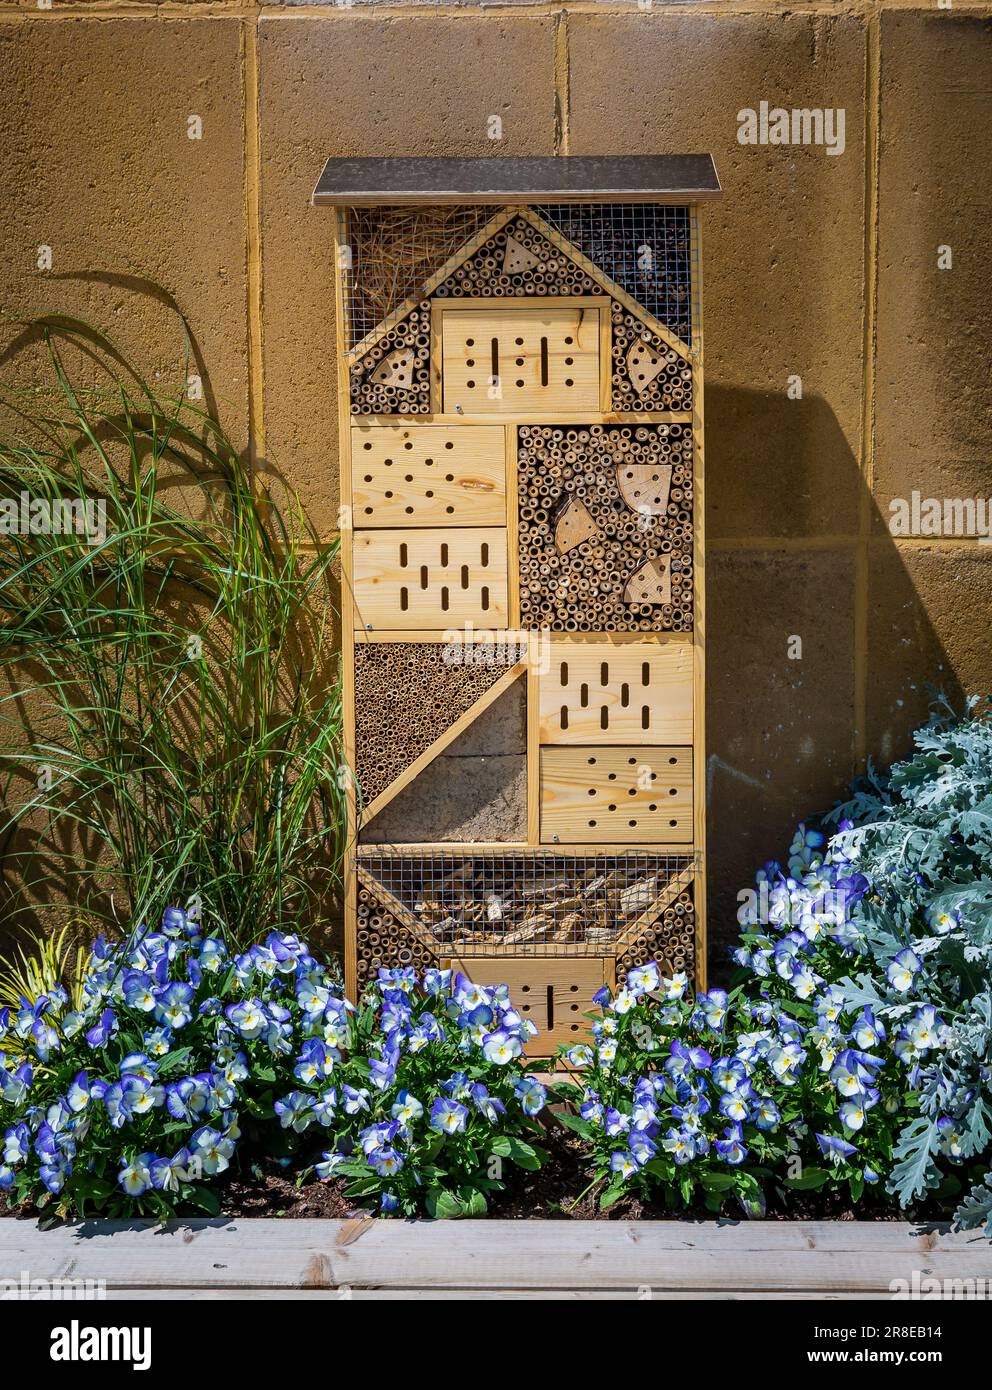 Insektenhotel hergestellt, Insektenhaus aus verschiedenen Materialien, um Bienen und anderen Insekten Schutz und Nisthilfe zu bieten Stockfoto